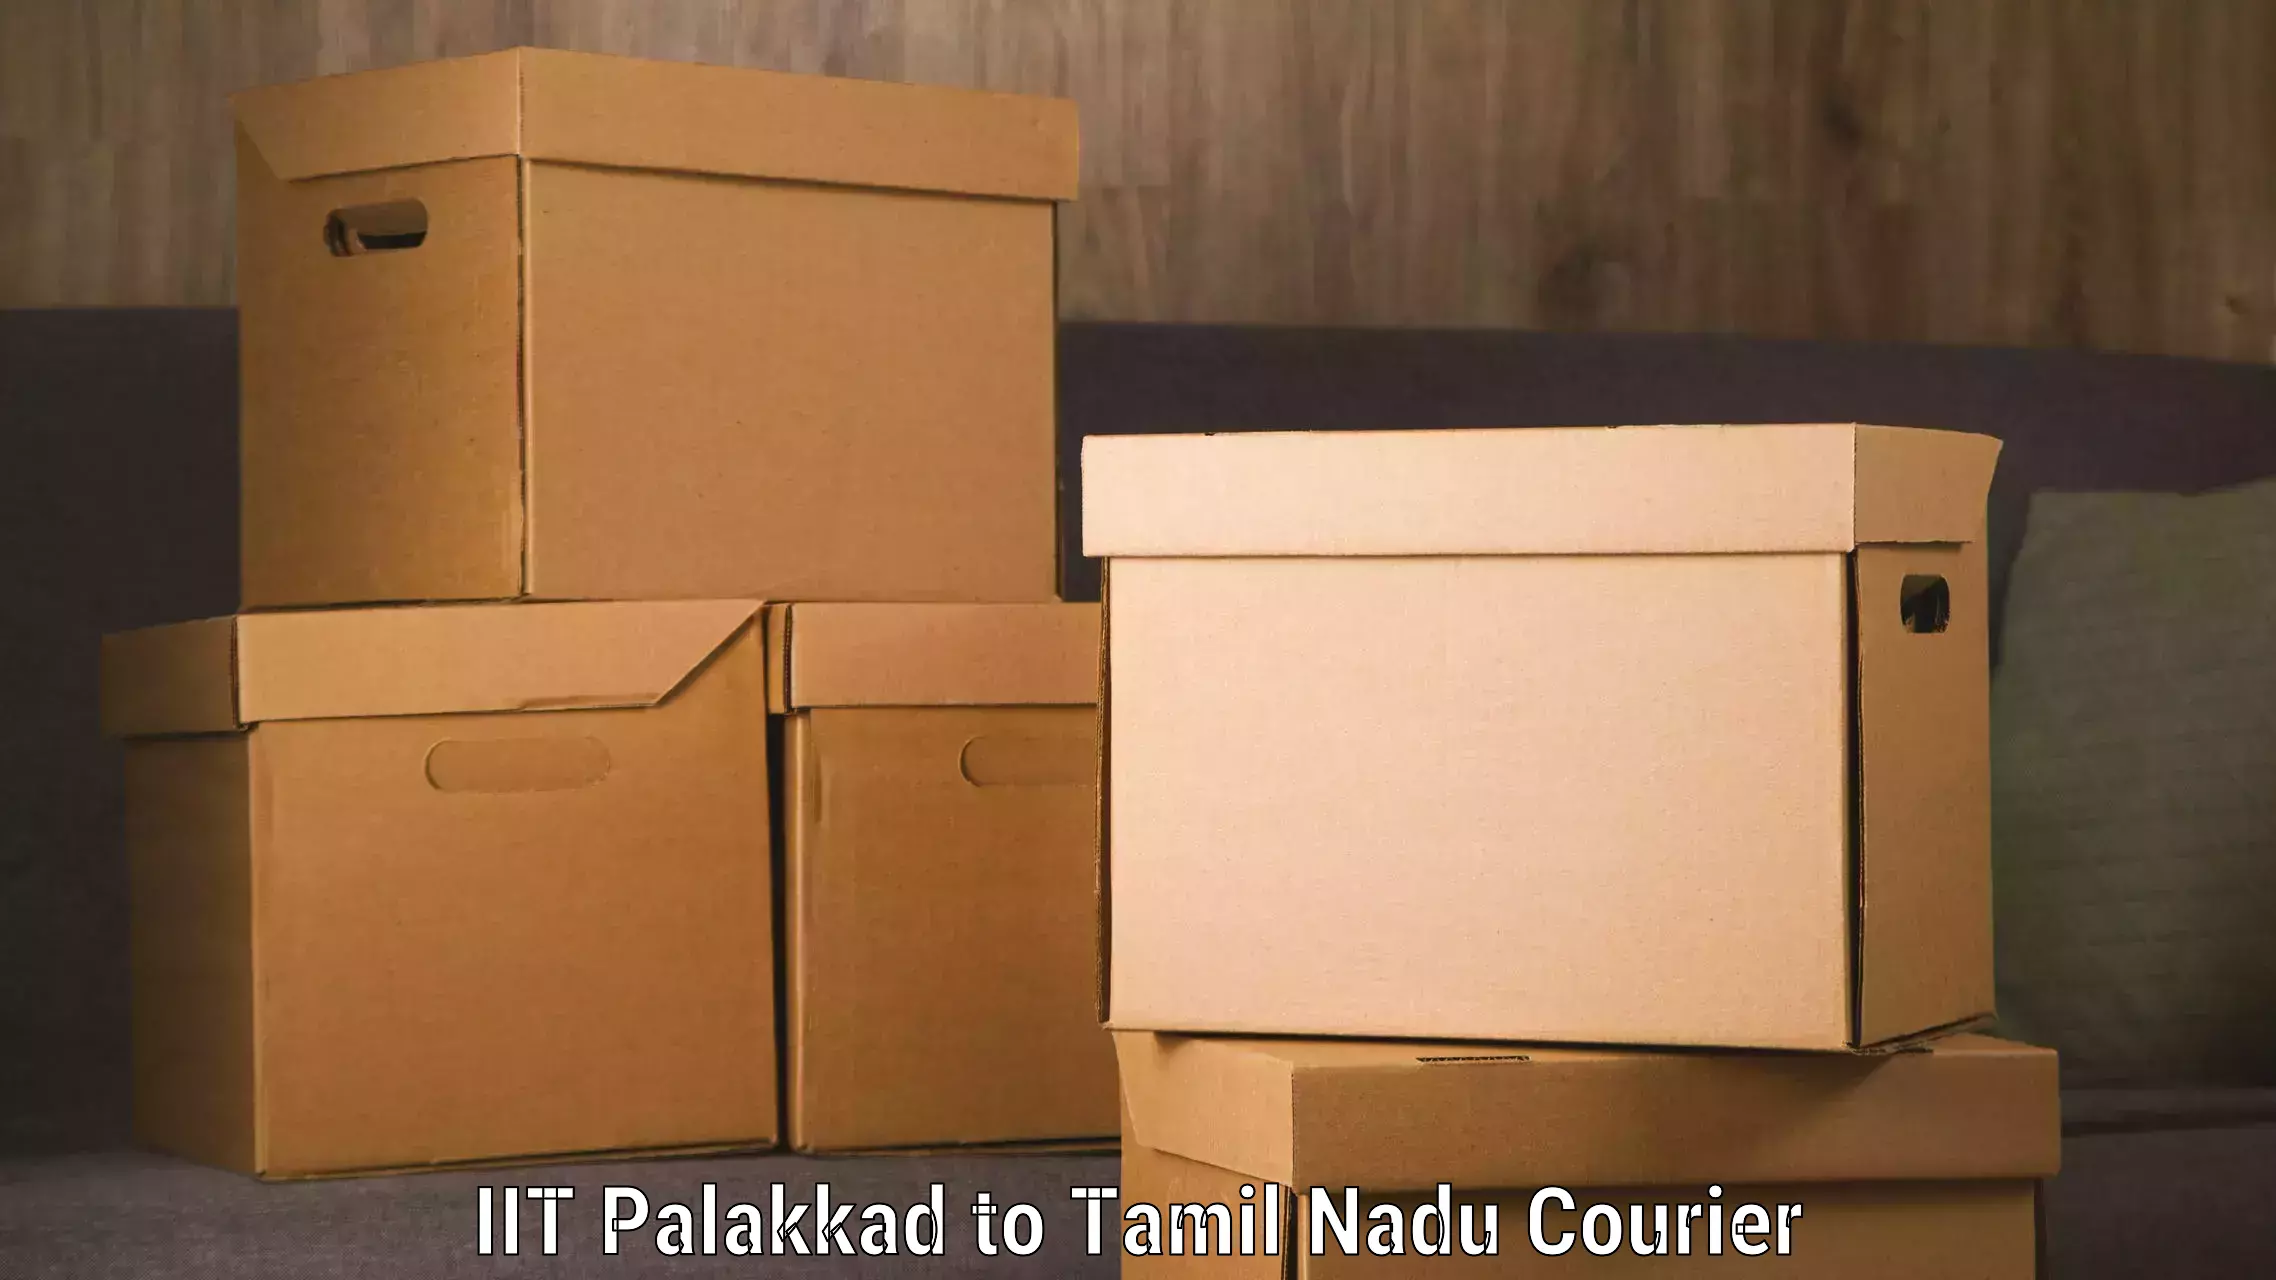 Seamless shipping service IIT Palakkad to Tirunelveli